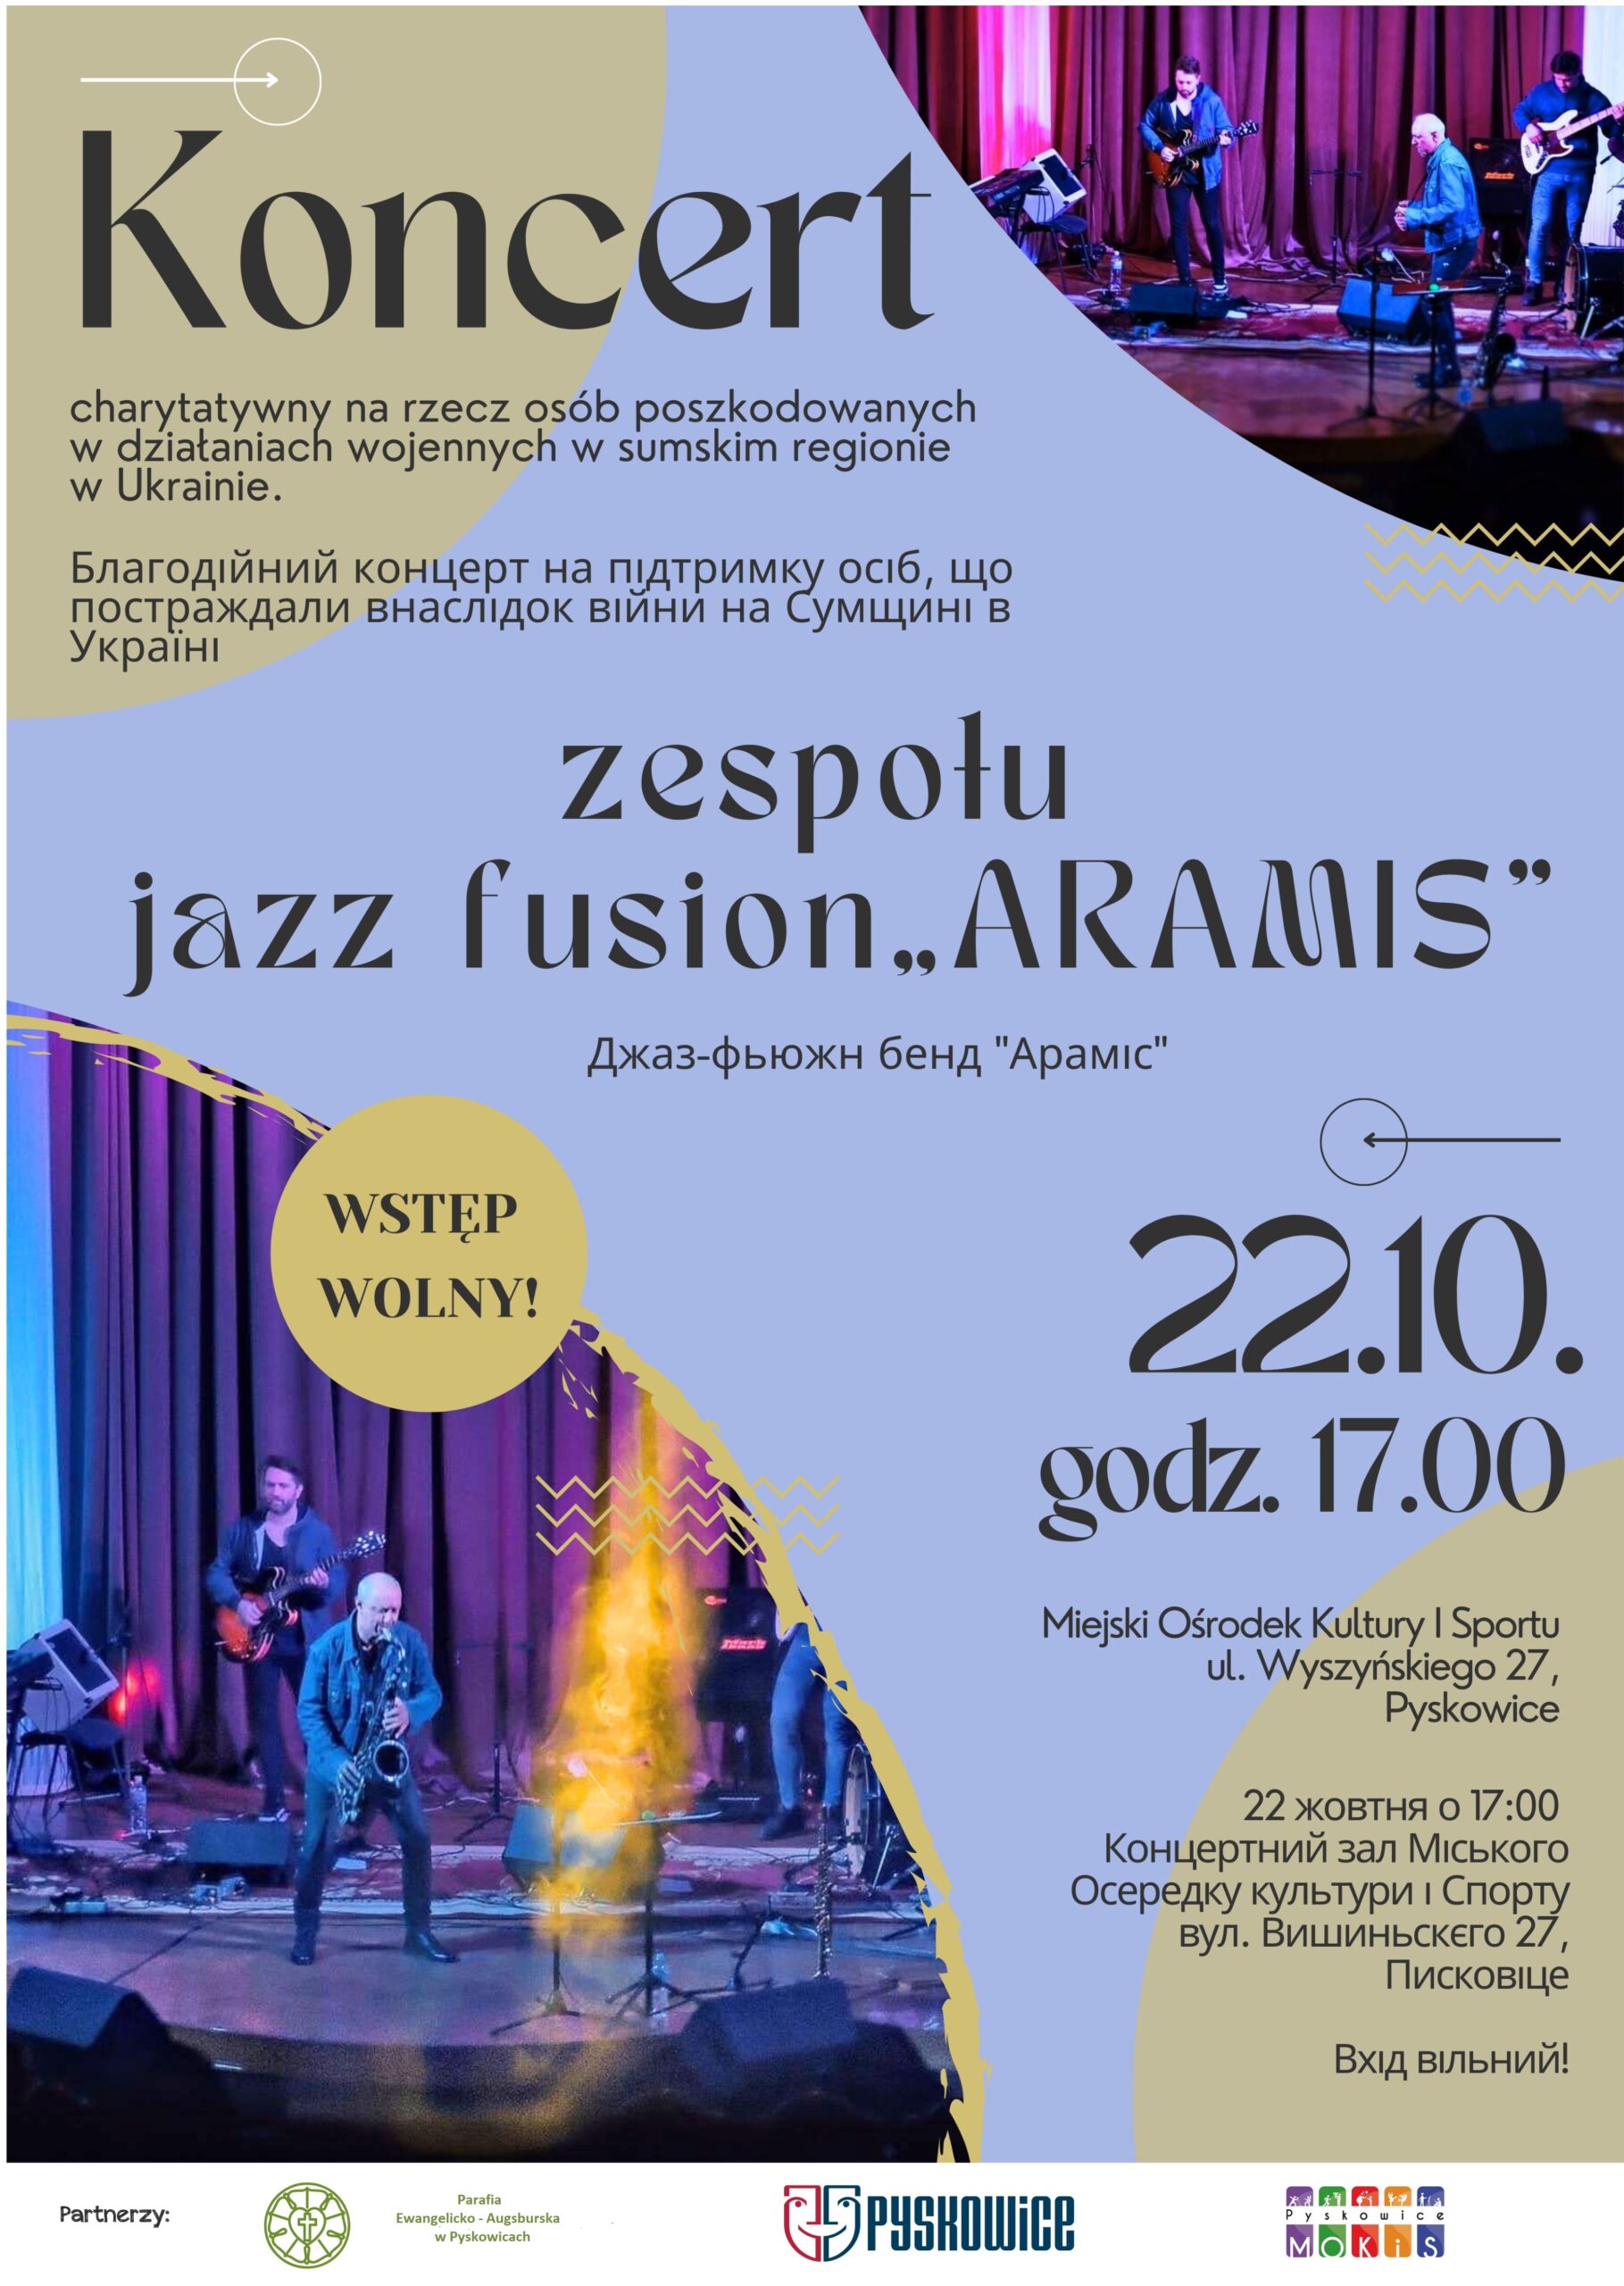 Plakat promujący koncert zespołu jazz fusion ARAMIS